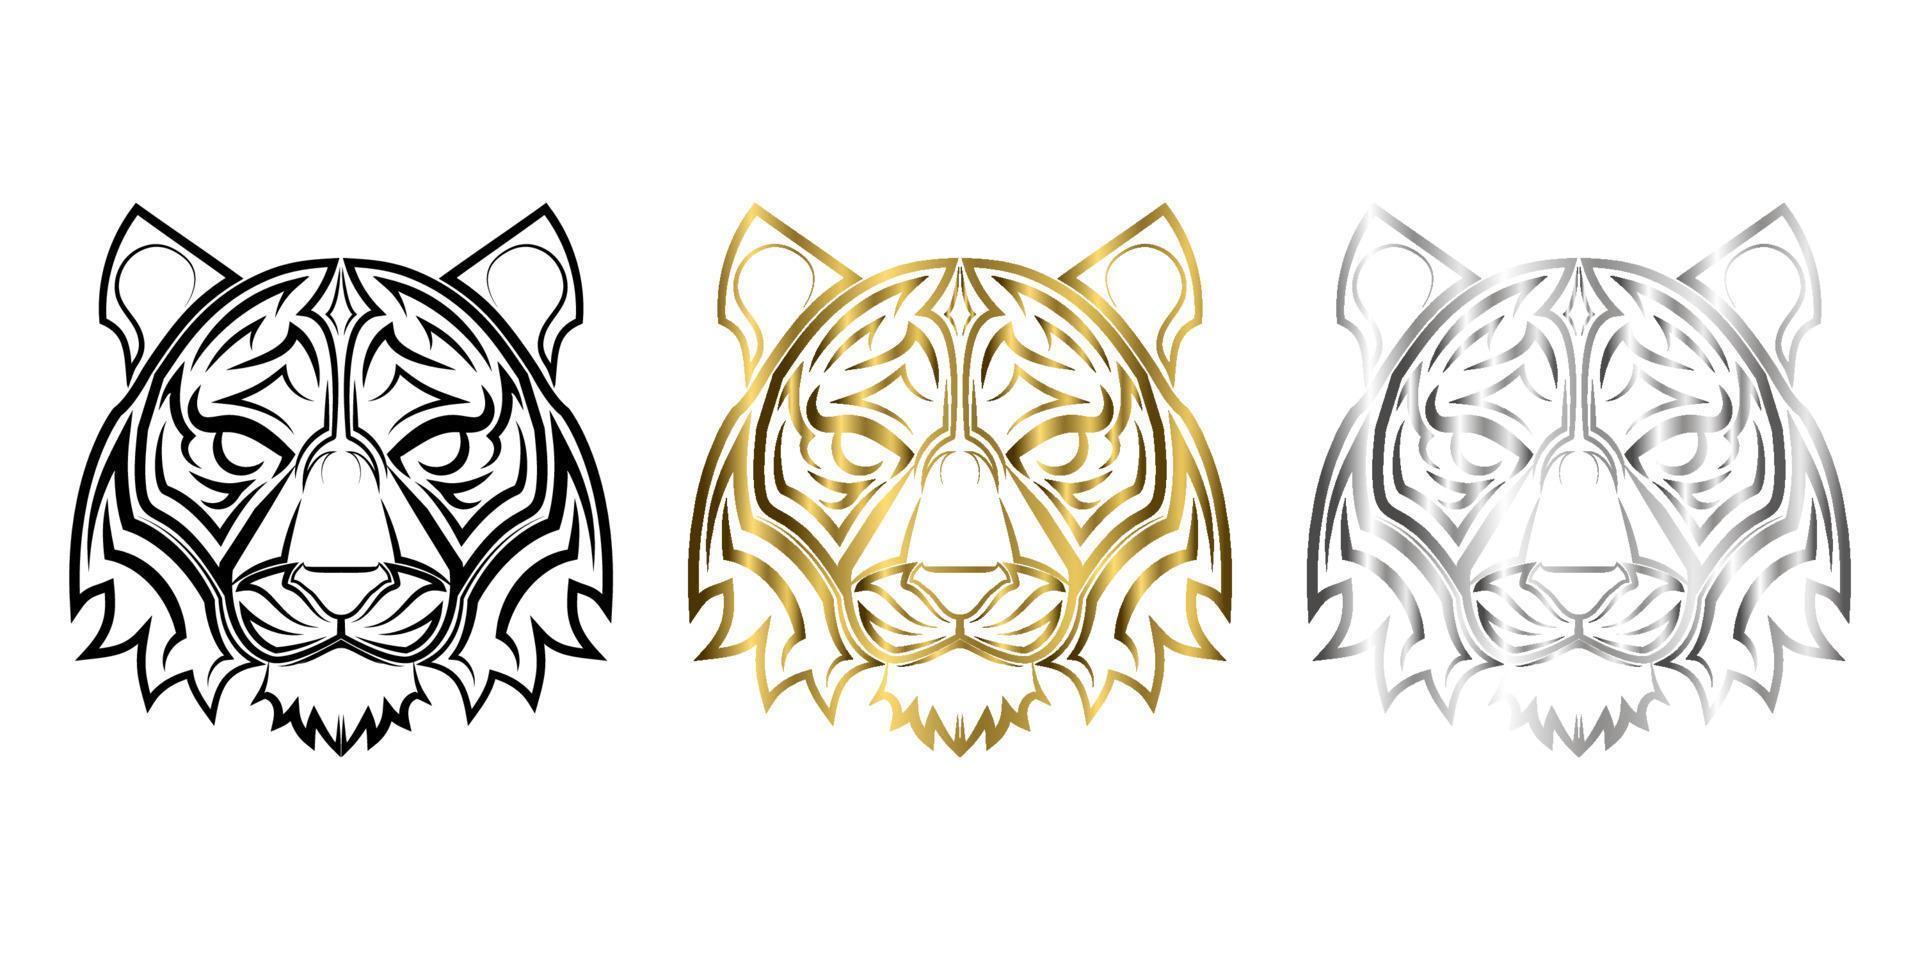 três cores preto ouro e prata linha arte de cabeça de tigre bom uso para símbolo mascote ícone avatar tatuagem logotipo de design de camiseta ou qualquer design vetor